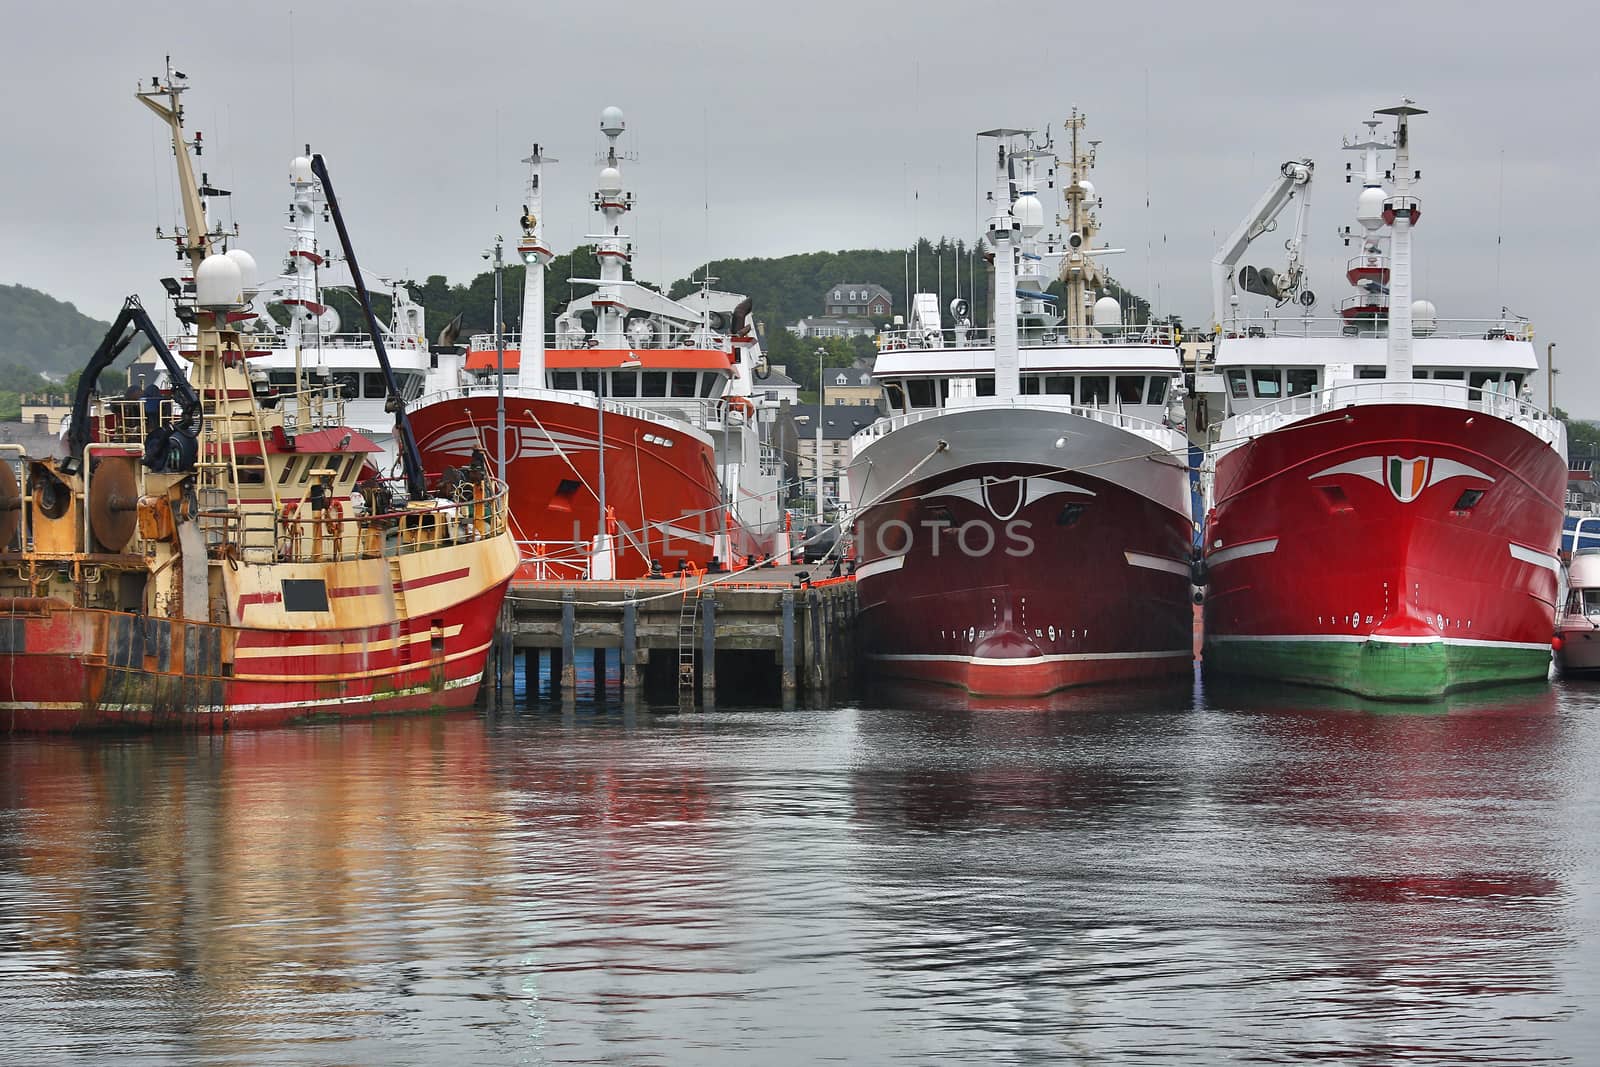 Fishing Trawlers in Killybegs Docks - Ireland by SteveAllenPhoto